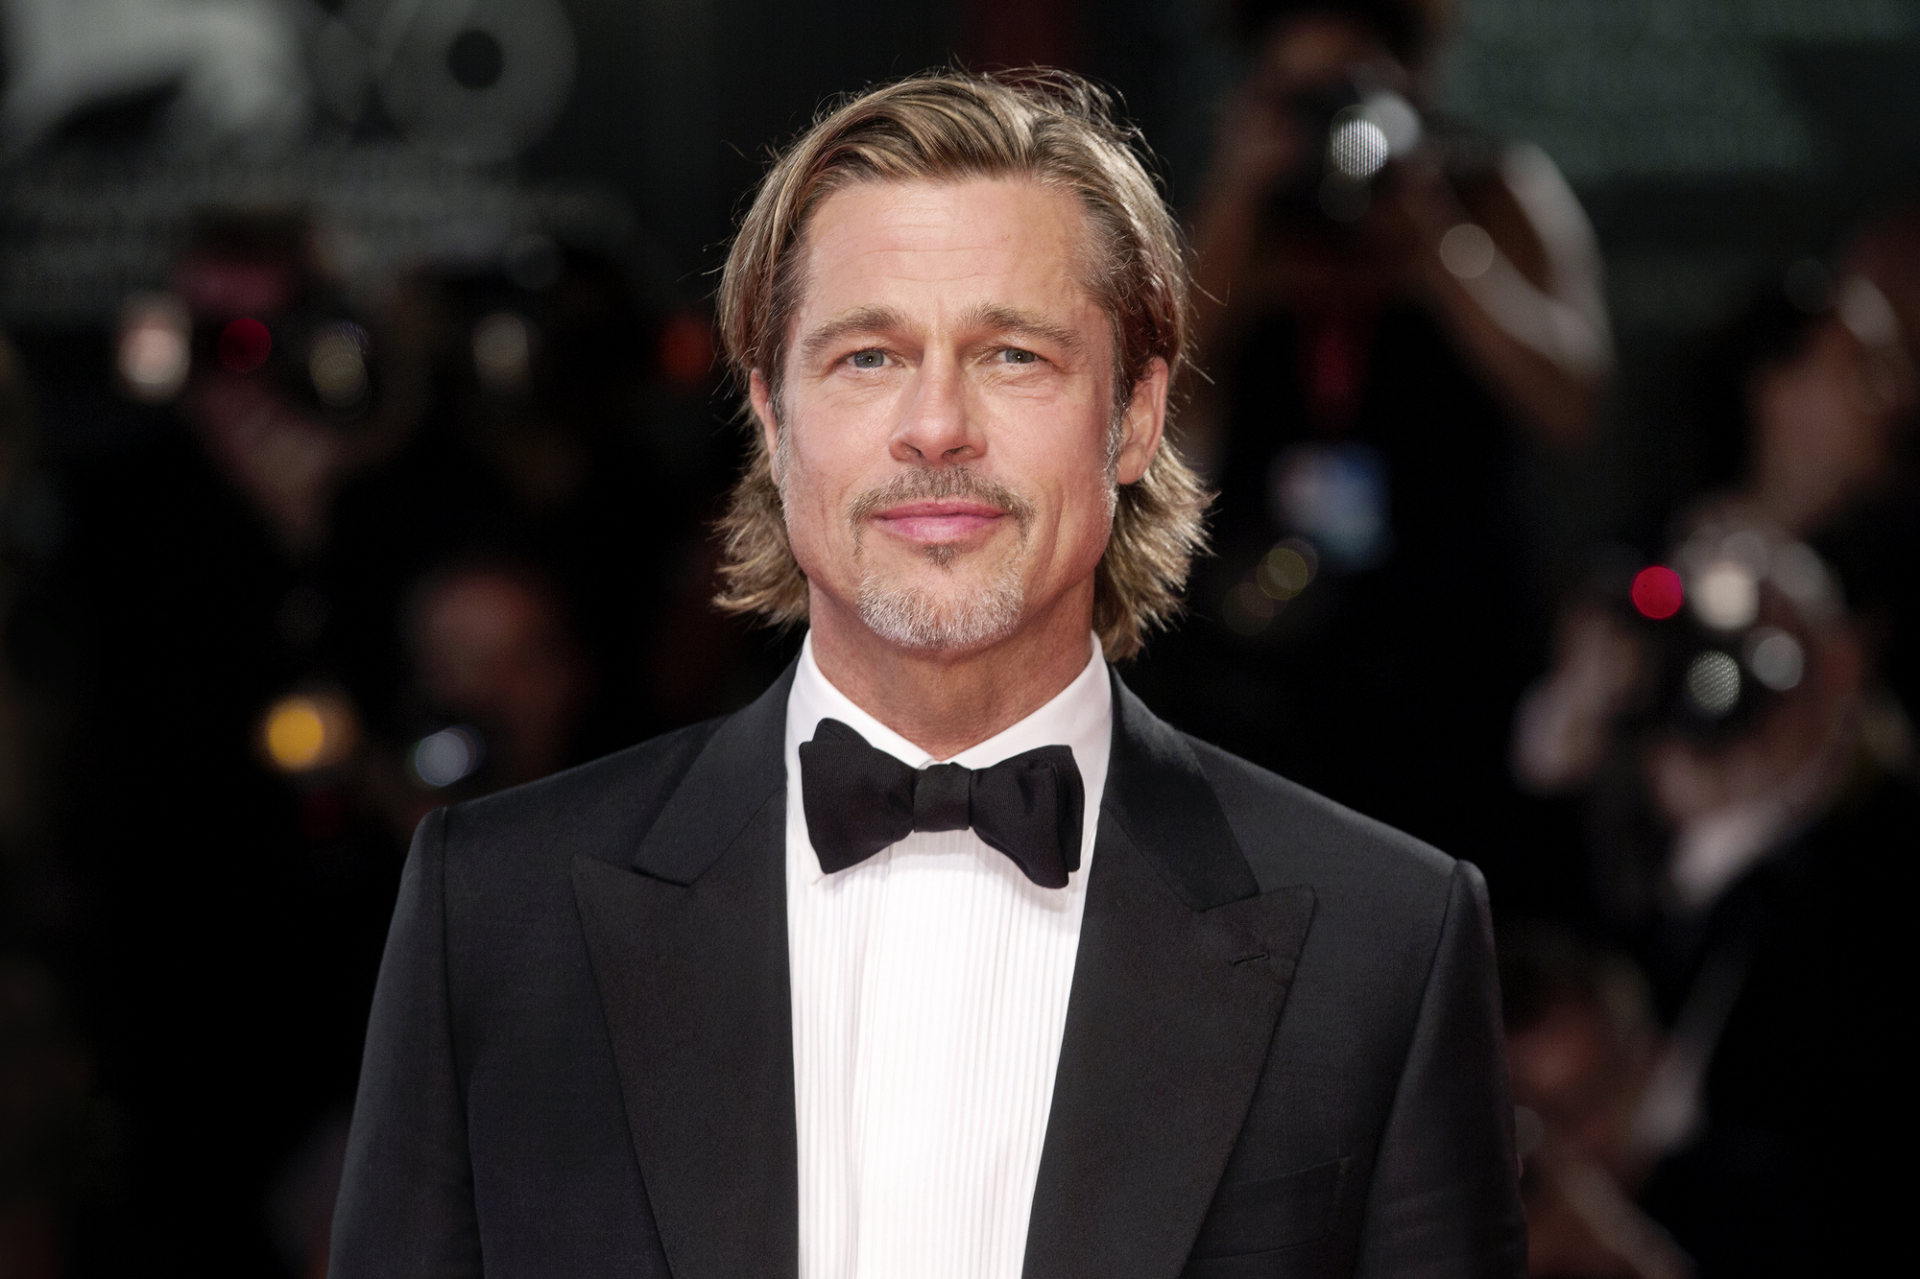 Angelina Jolie tette tönkre Brad Pitt kapcsolatát a gyerekeivel? 